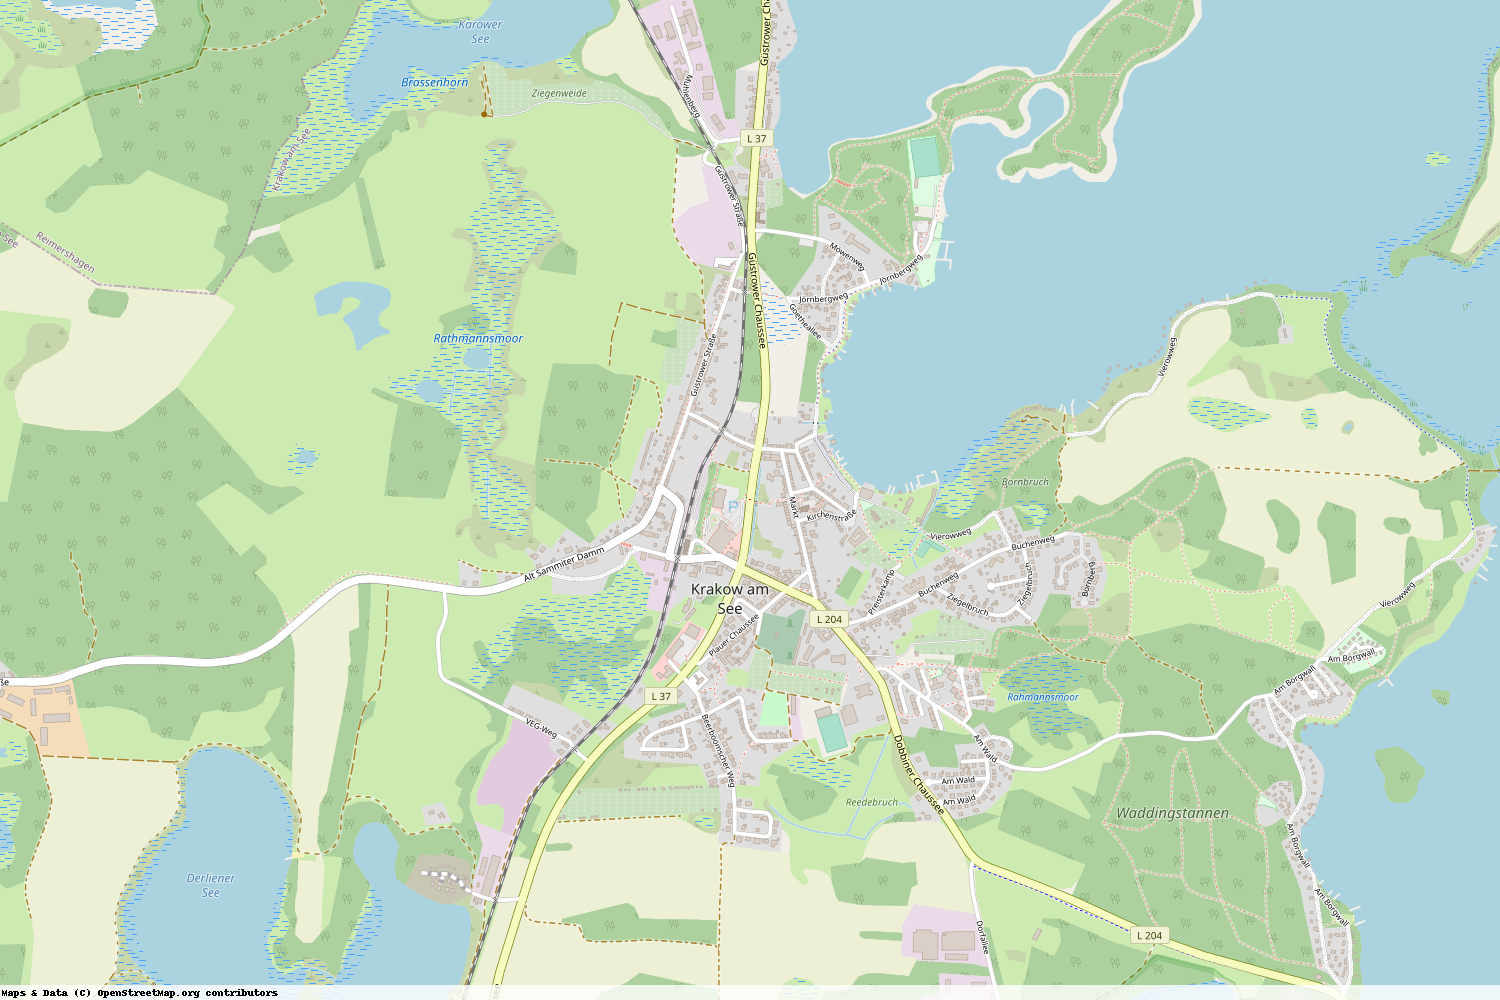 Ist gerade Stromausfall in Mecklenburg-Vorpommern - Rostock - Krakow am See?